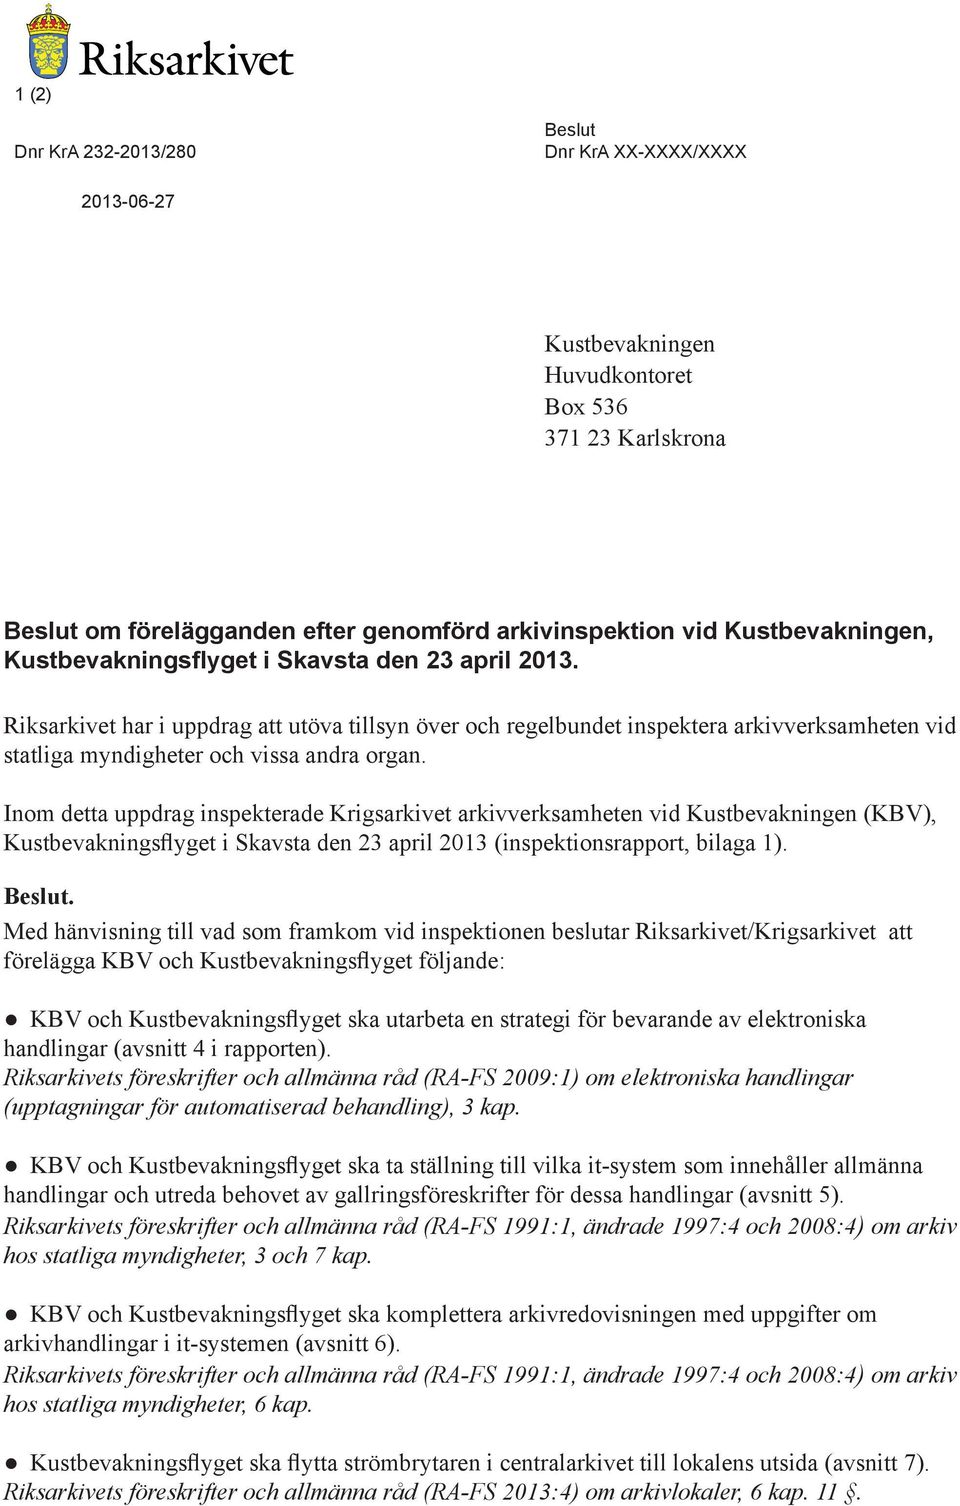 Inom detta uppdrag inspekterade Krigsarkivet arkivverksamheten vid Kustbevakningen (KBV), Kustbevakningsflyget i Skavsta den 23 april 2013 (inspektionsrapport, bilaga 1). Beslut.